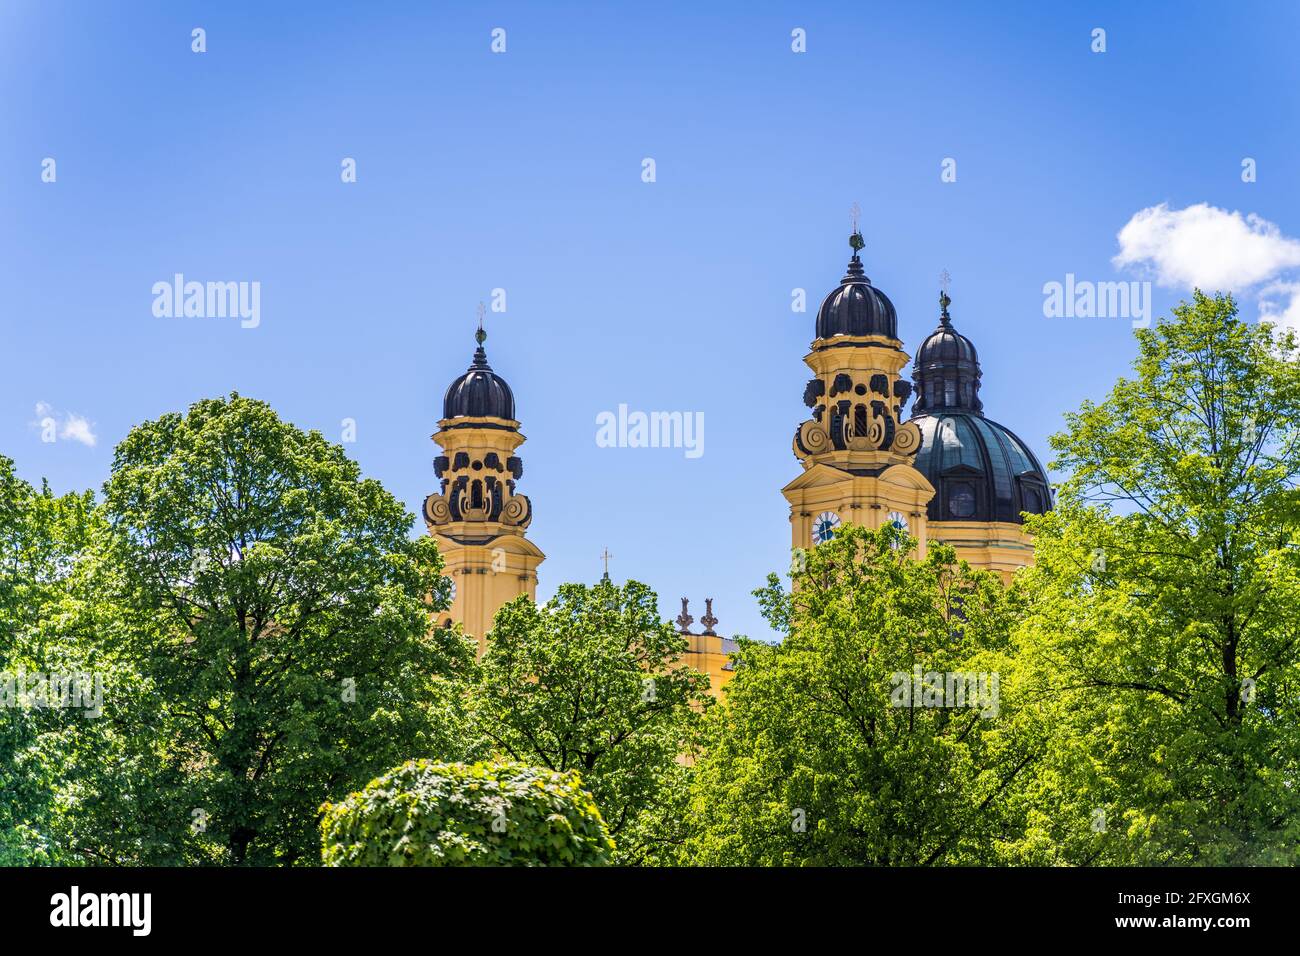 Blick auf die Theaterinerkirche vom Hofgarten, München Foto Stock